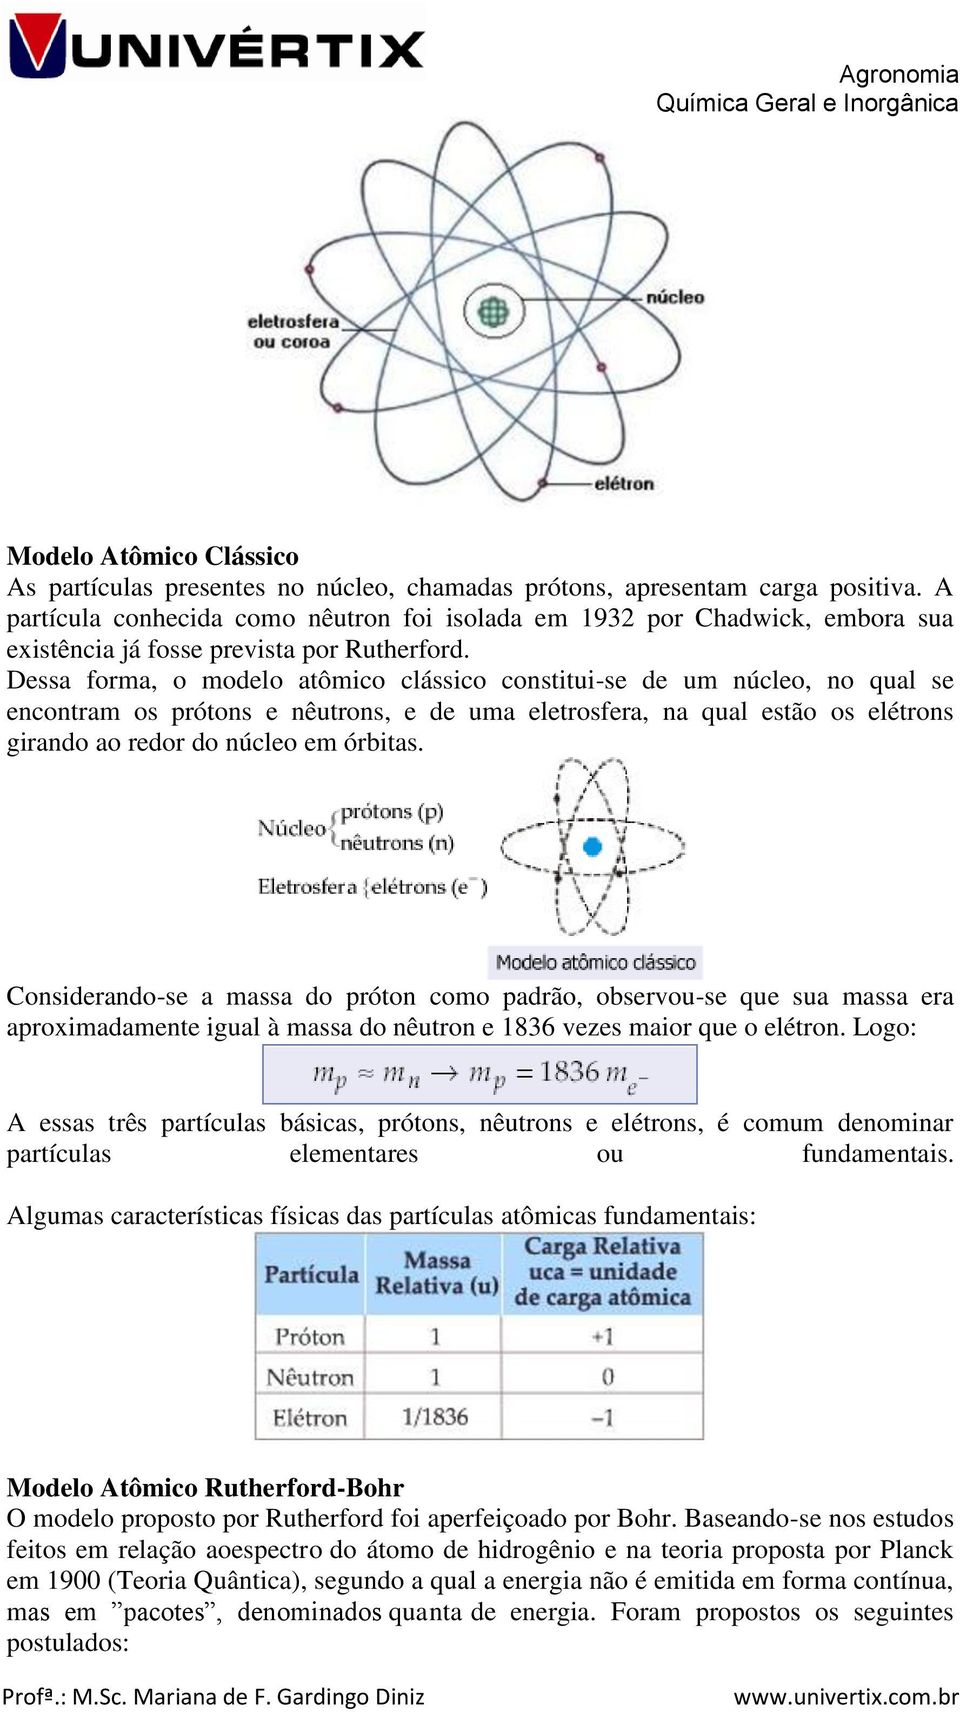 Dessa forma, o modelo atômico clássico constitui-se de um núcleo, no qual se encontram os prótons e nêutrons, e de uma eletrosfera, na qual estão os elétrons girando ao redor do núcleo em órbitas.